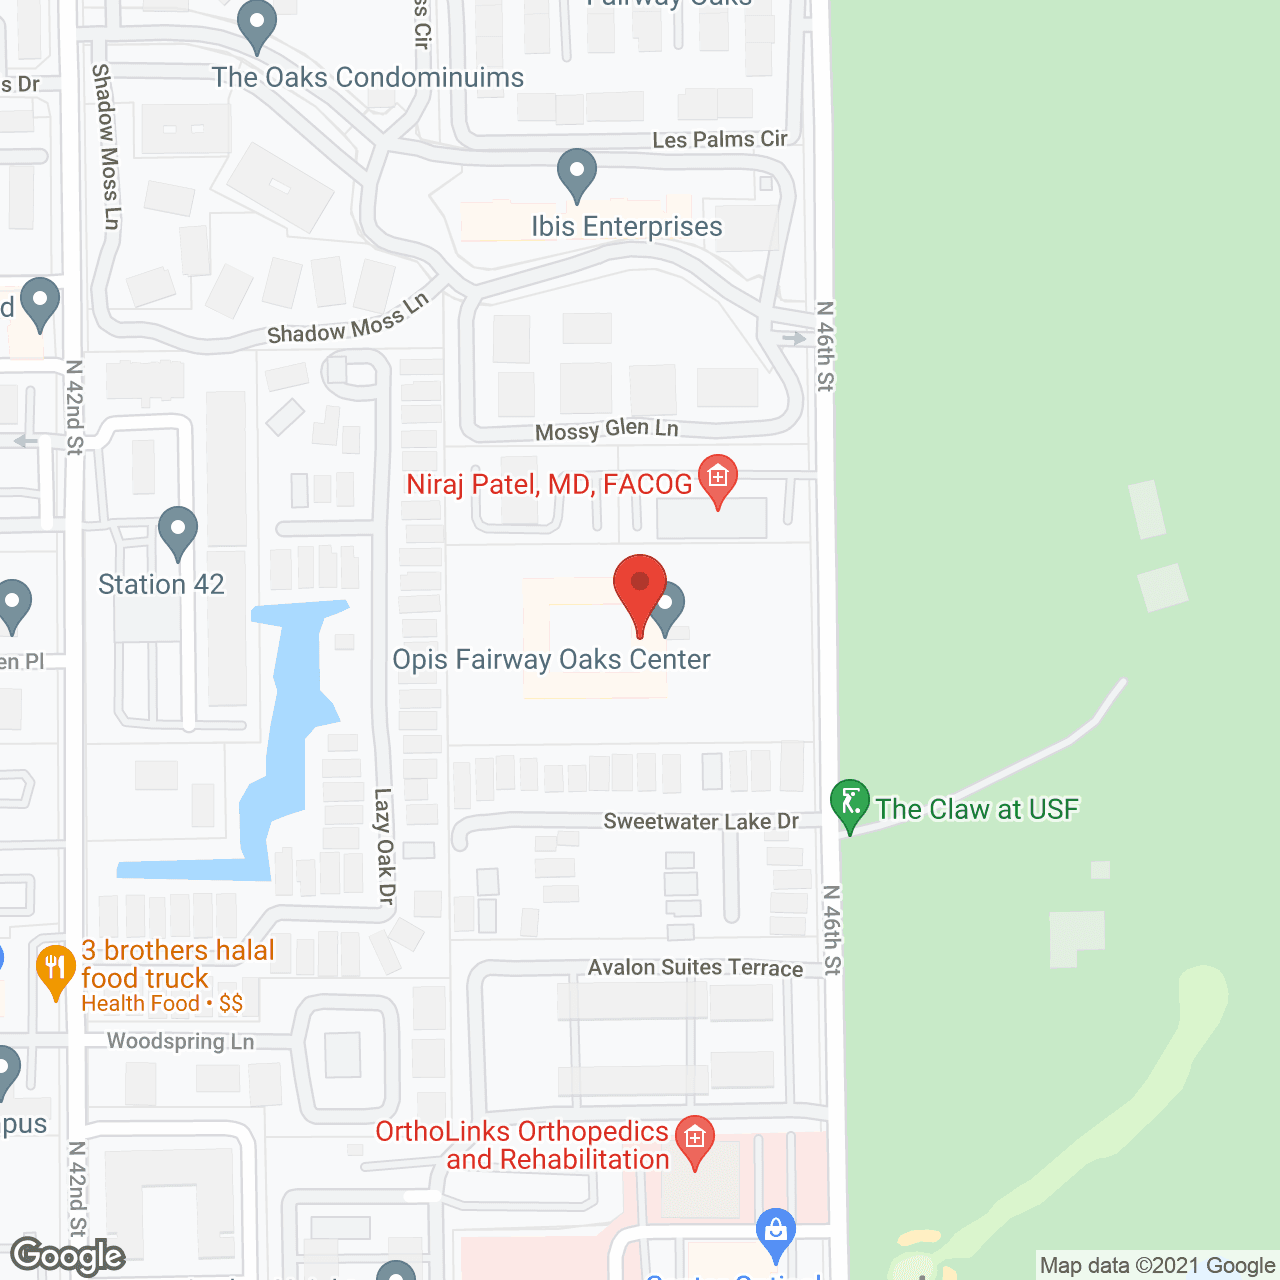 Fairway Oaks Ctr in google map